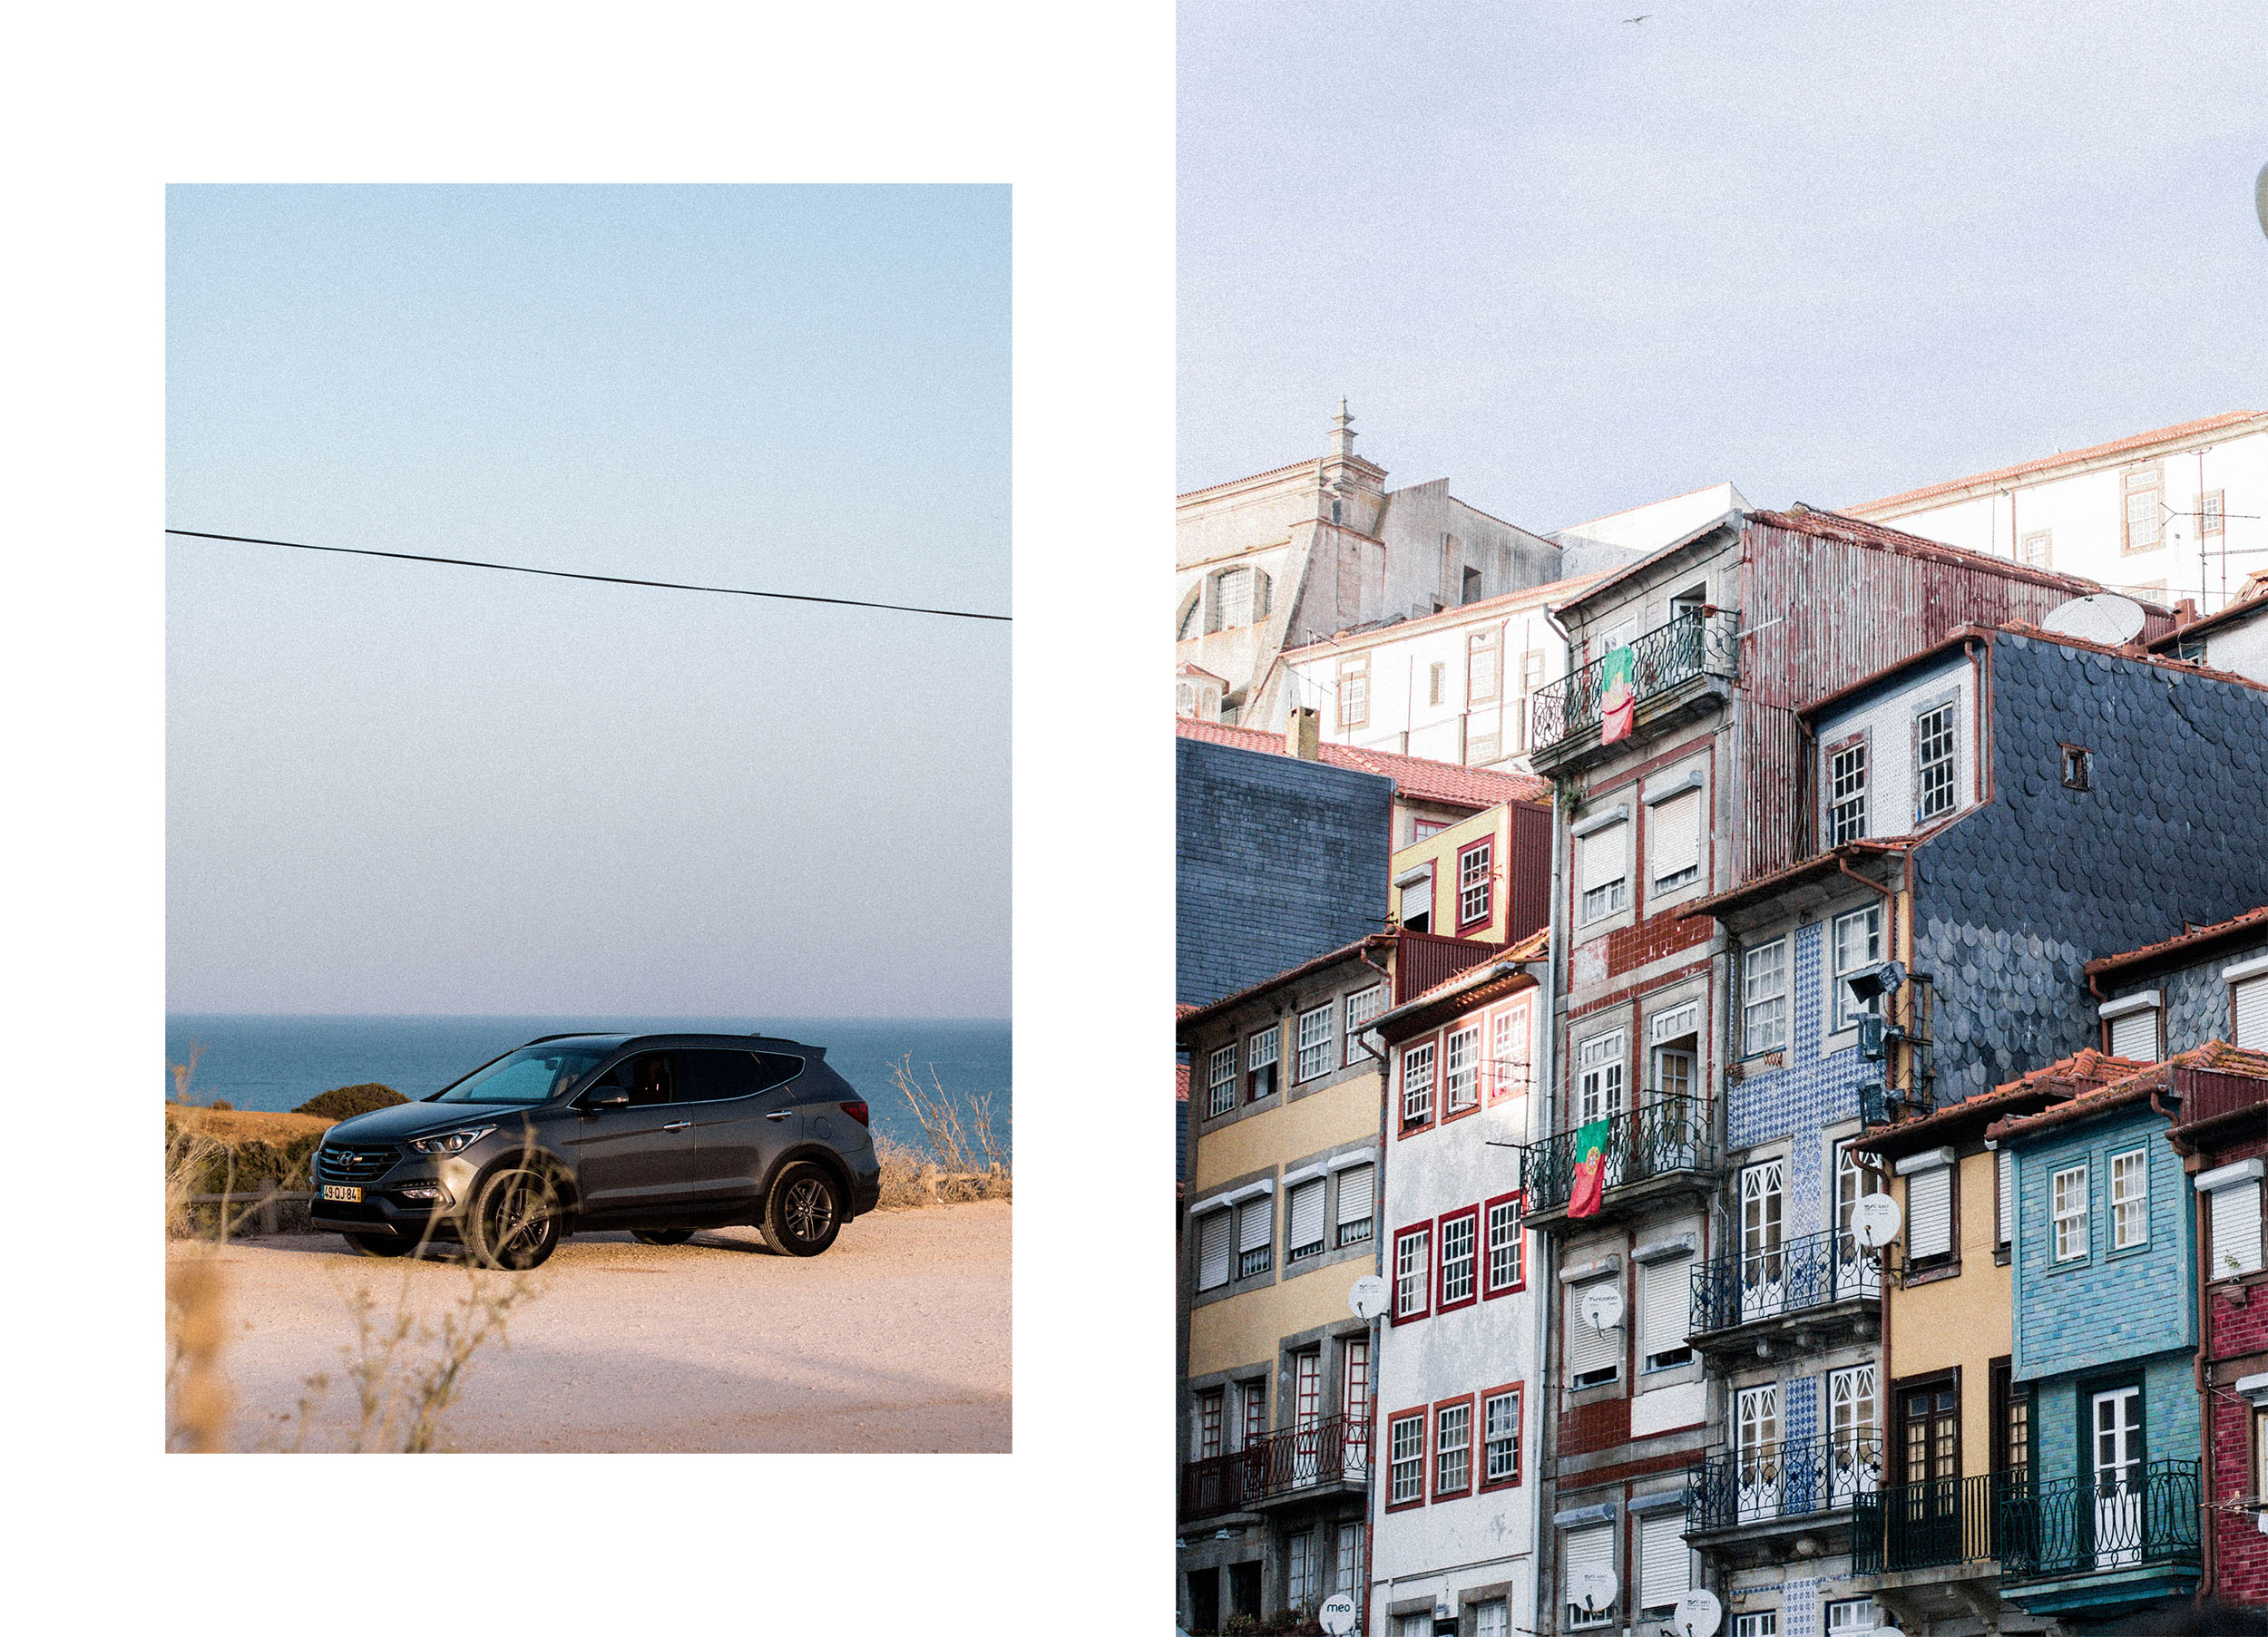 Portugal Roadtrip with Hyundai Santa Fe SUV Travel Diary by IheartAlice.com